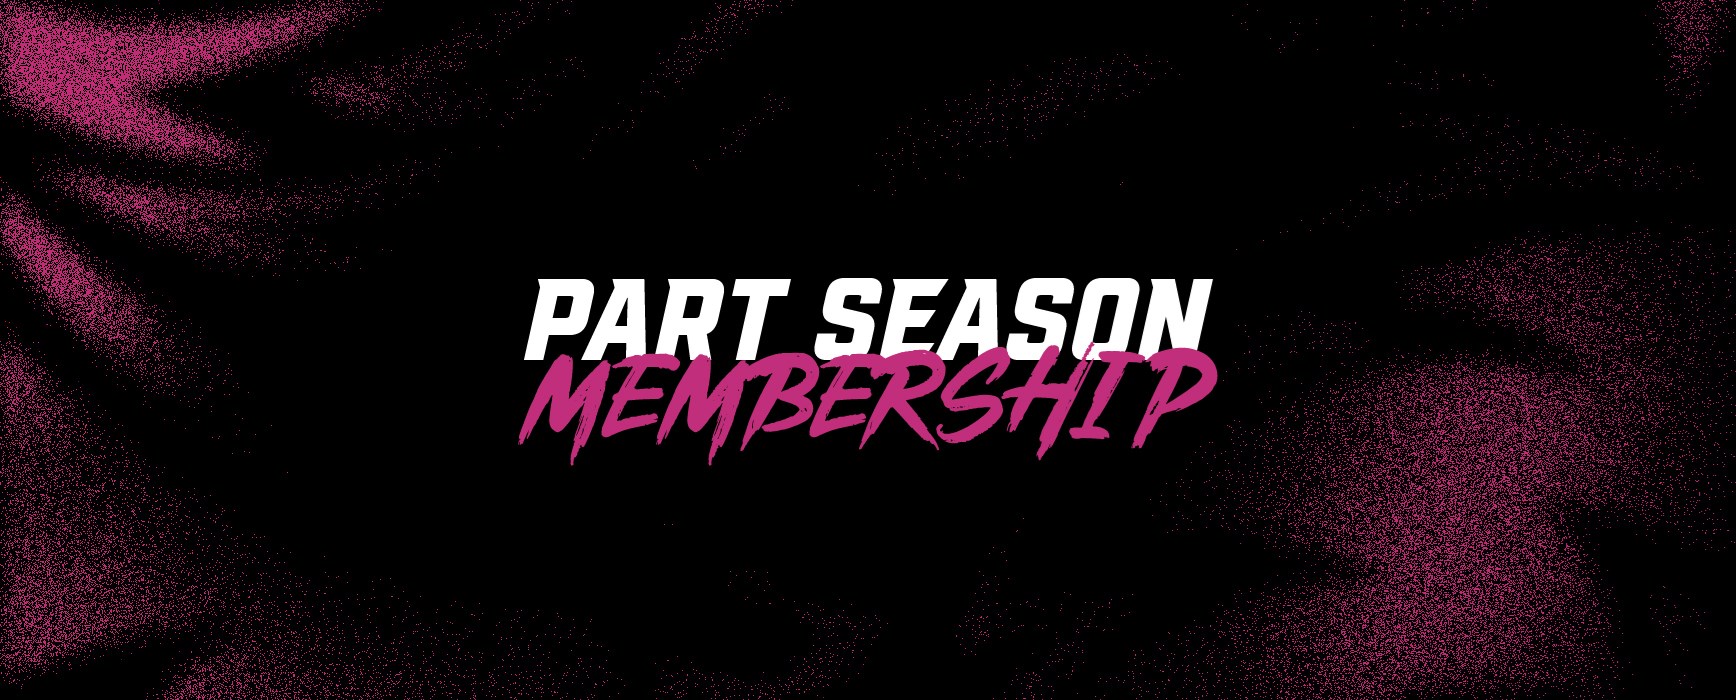 Part Season Membership